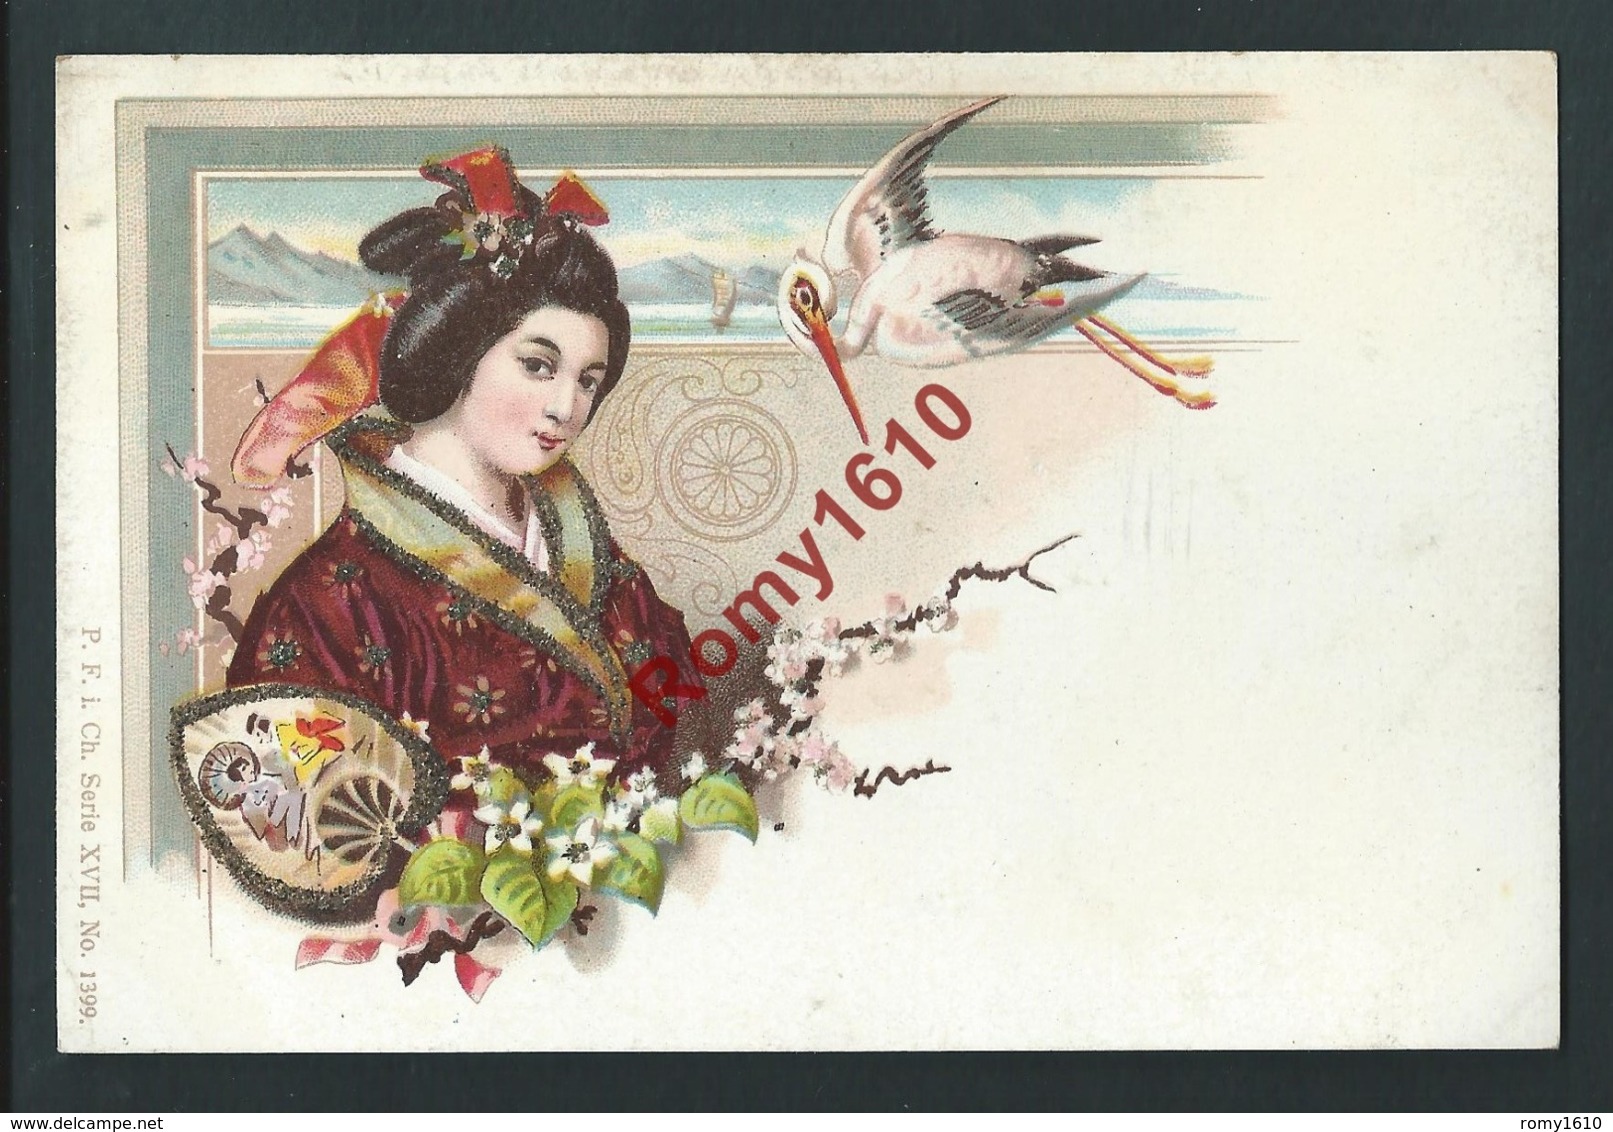 Japon. Lithographie Pailletée.Geisha, Kimono, éventail, Fleurs, Oiseau. Superbe Illustration. Rare. - Avant 1900